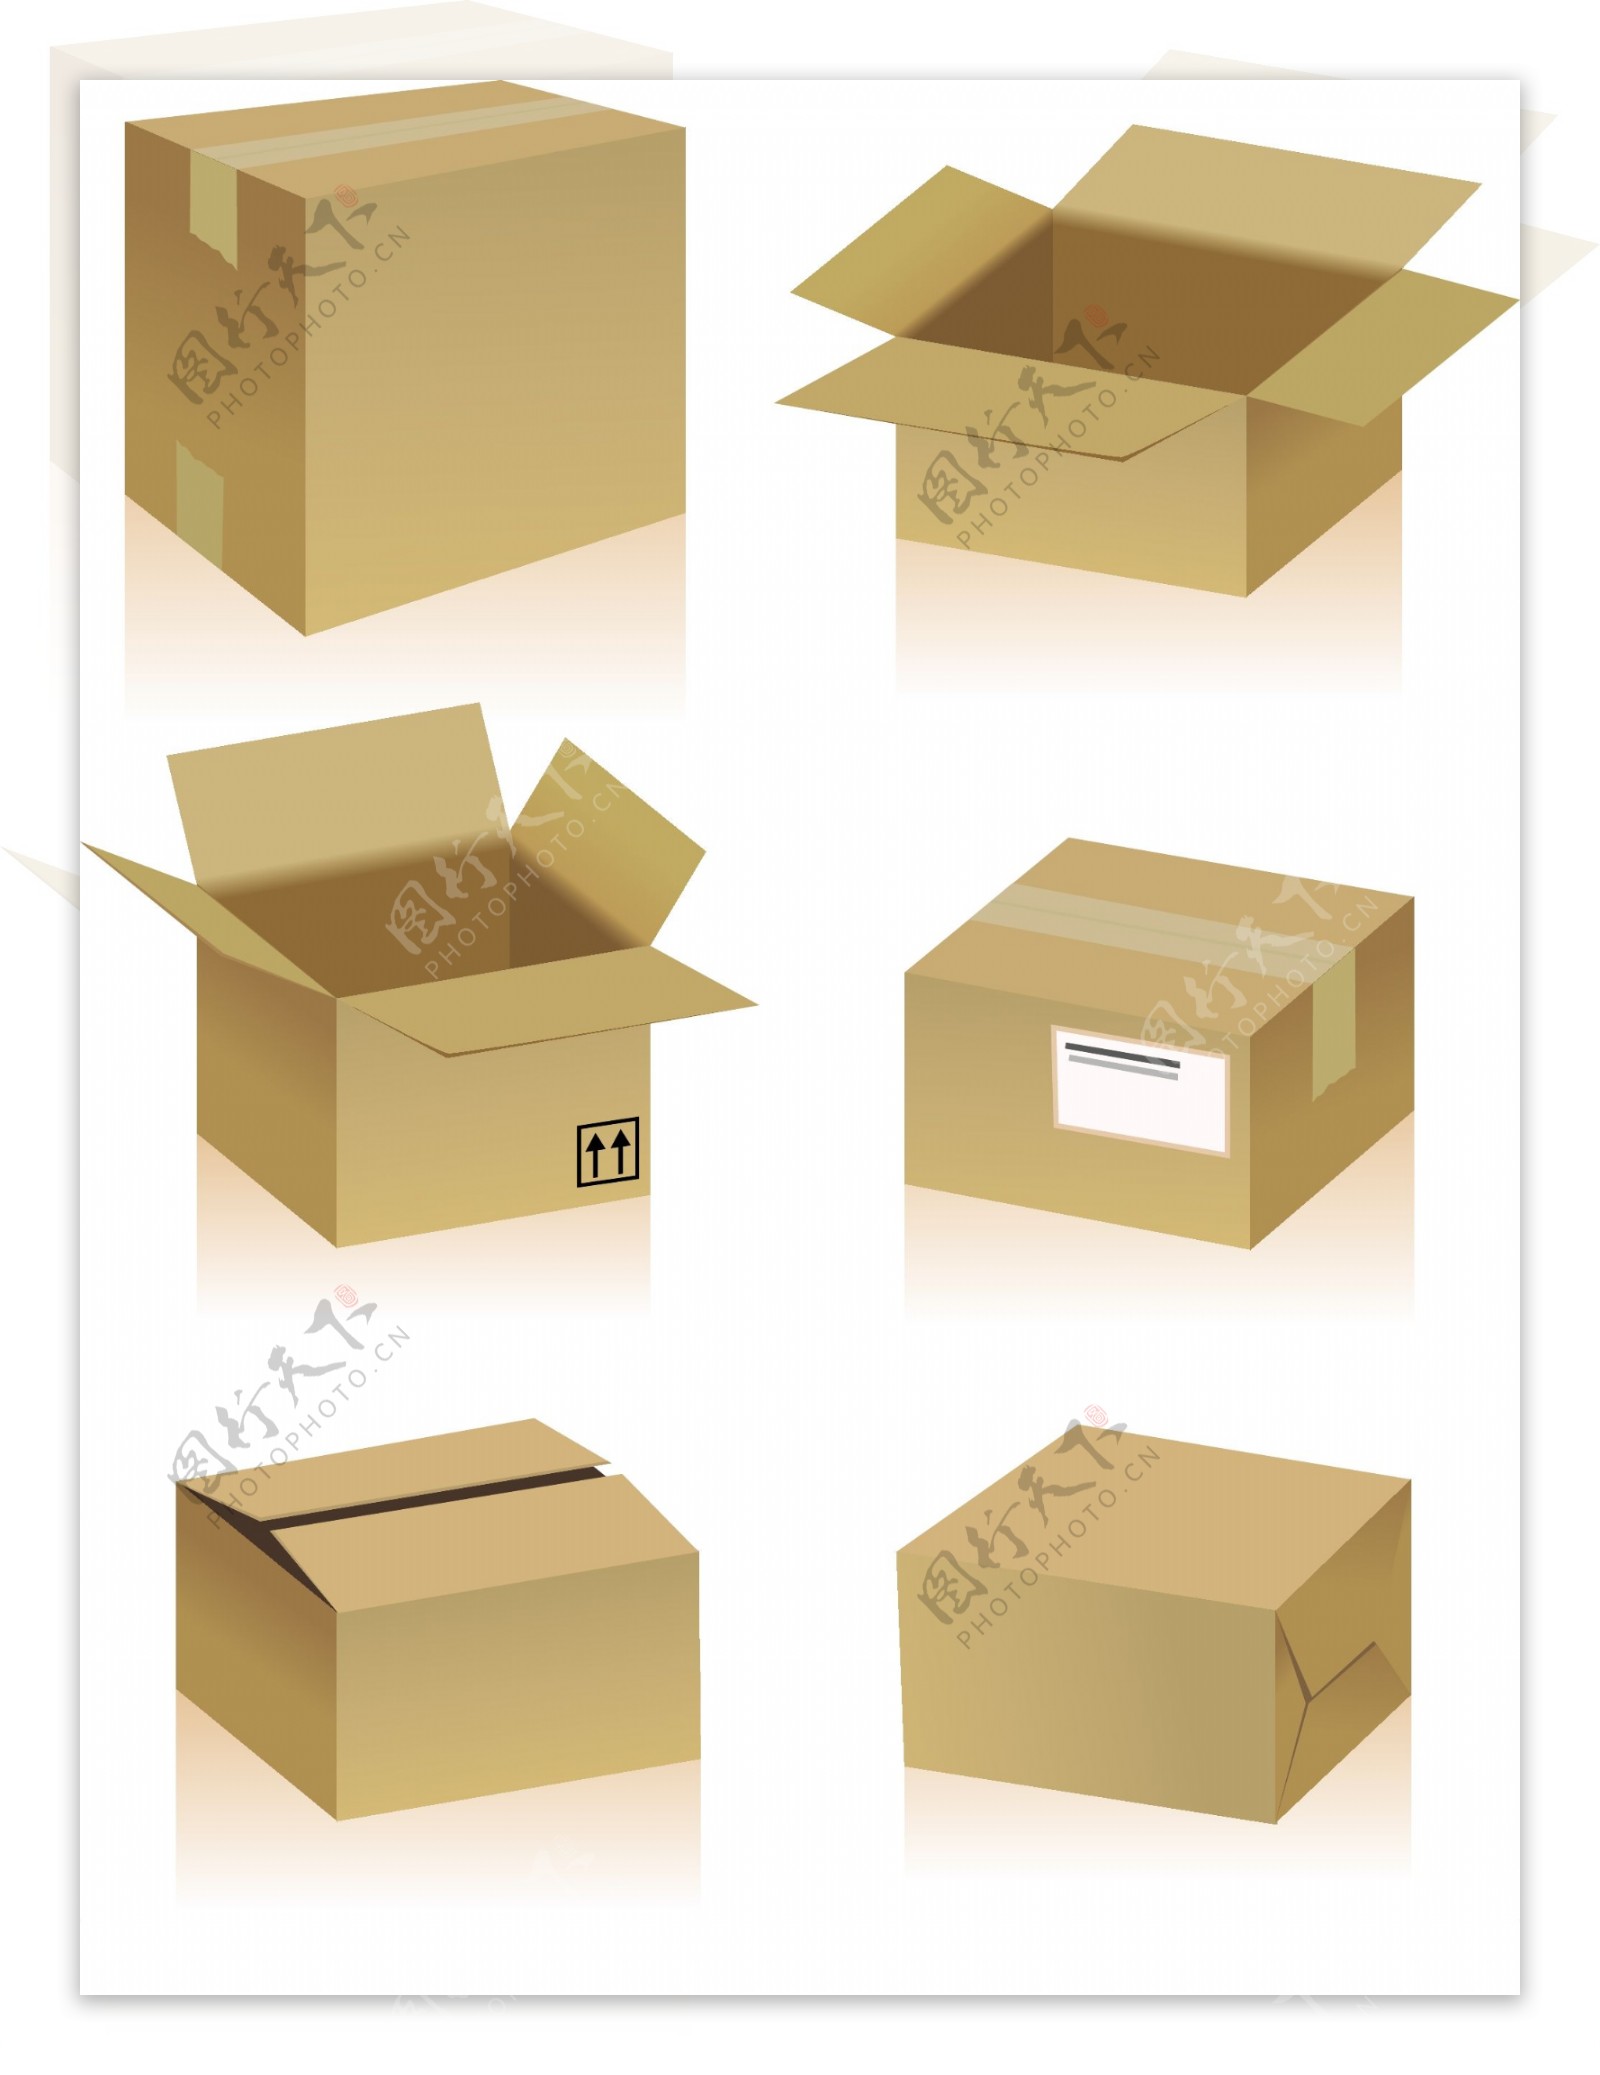 立体纸箱和常见纸箱标志矢量素材2